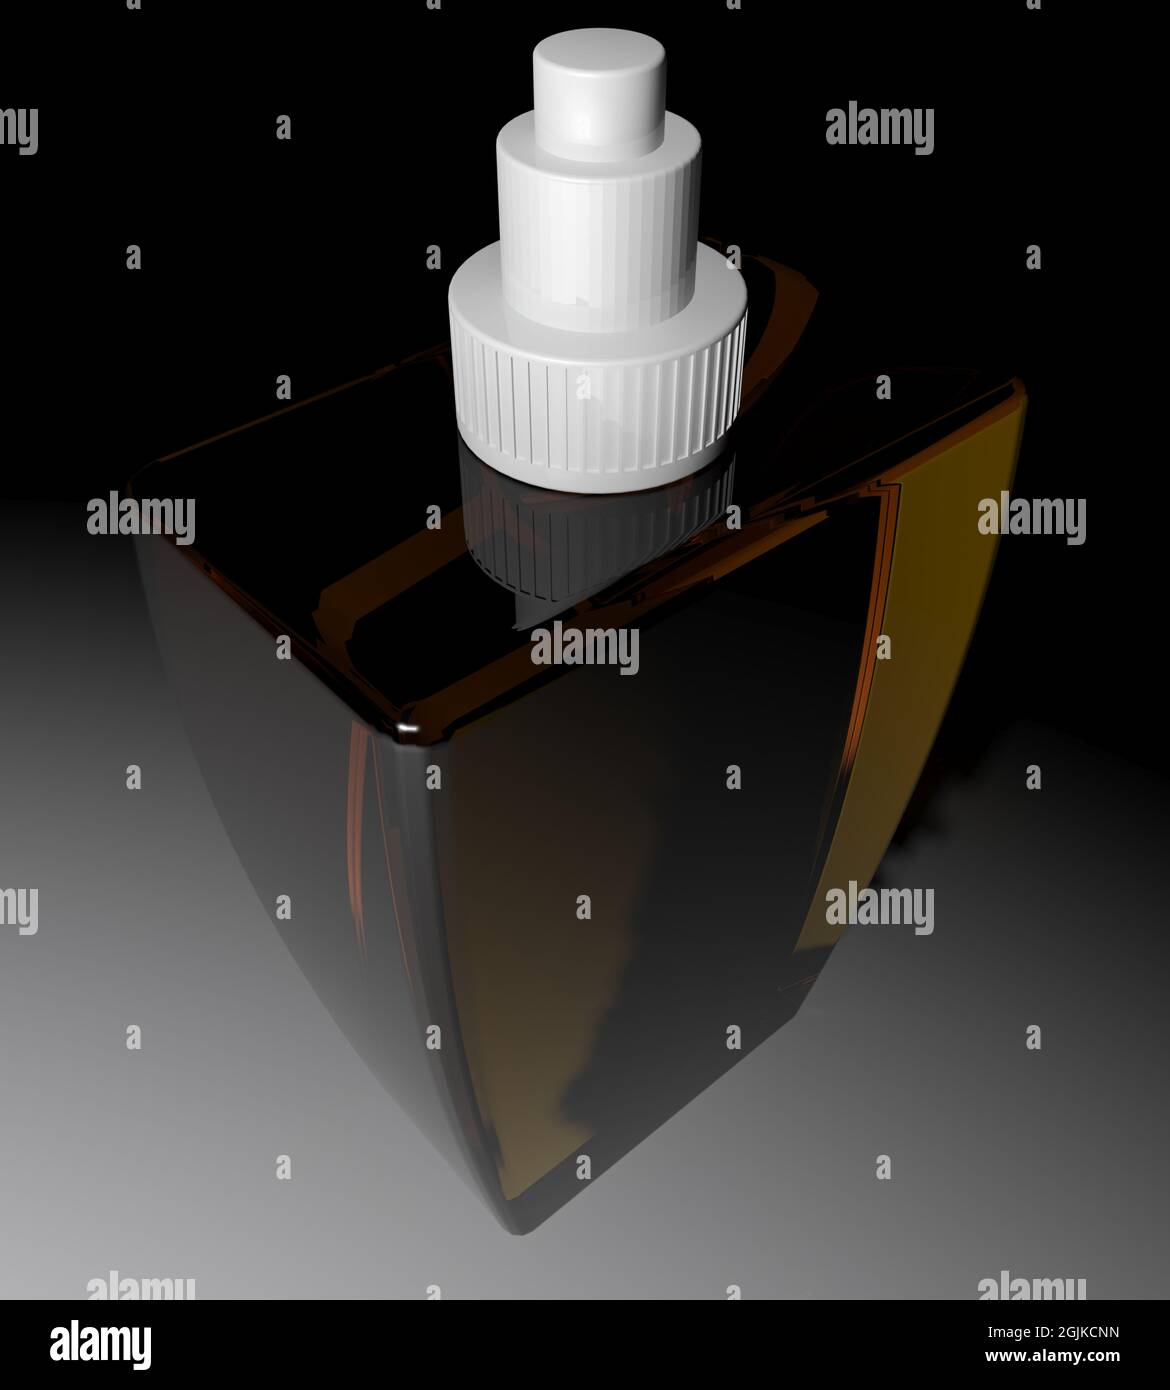 Flacon de parfum de couleur ambre avec partie supérieure blanche - illustration du rendu 3D Banque D'Images